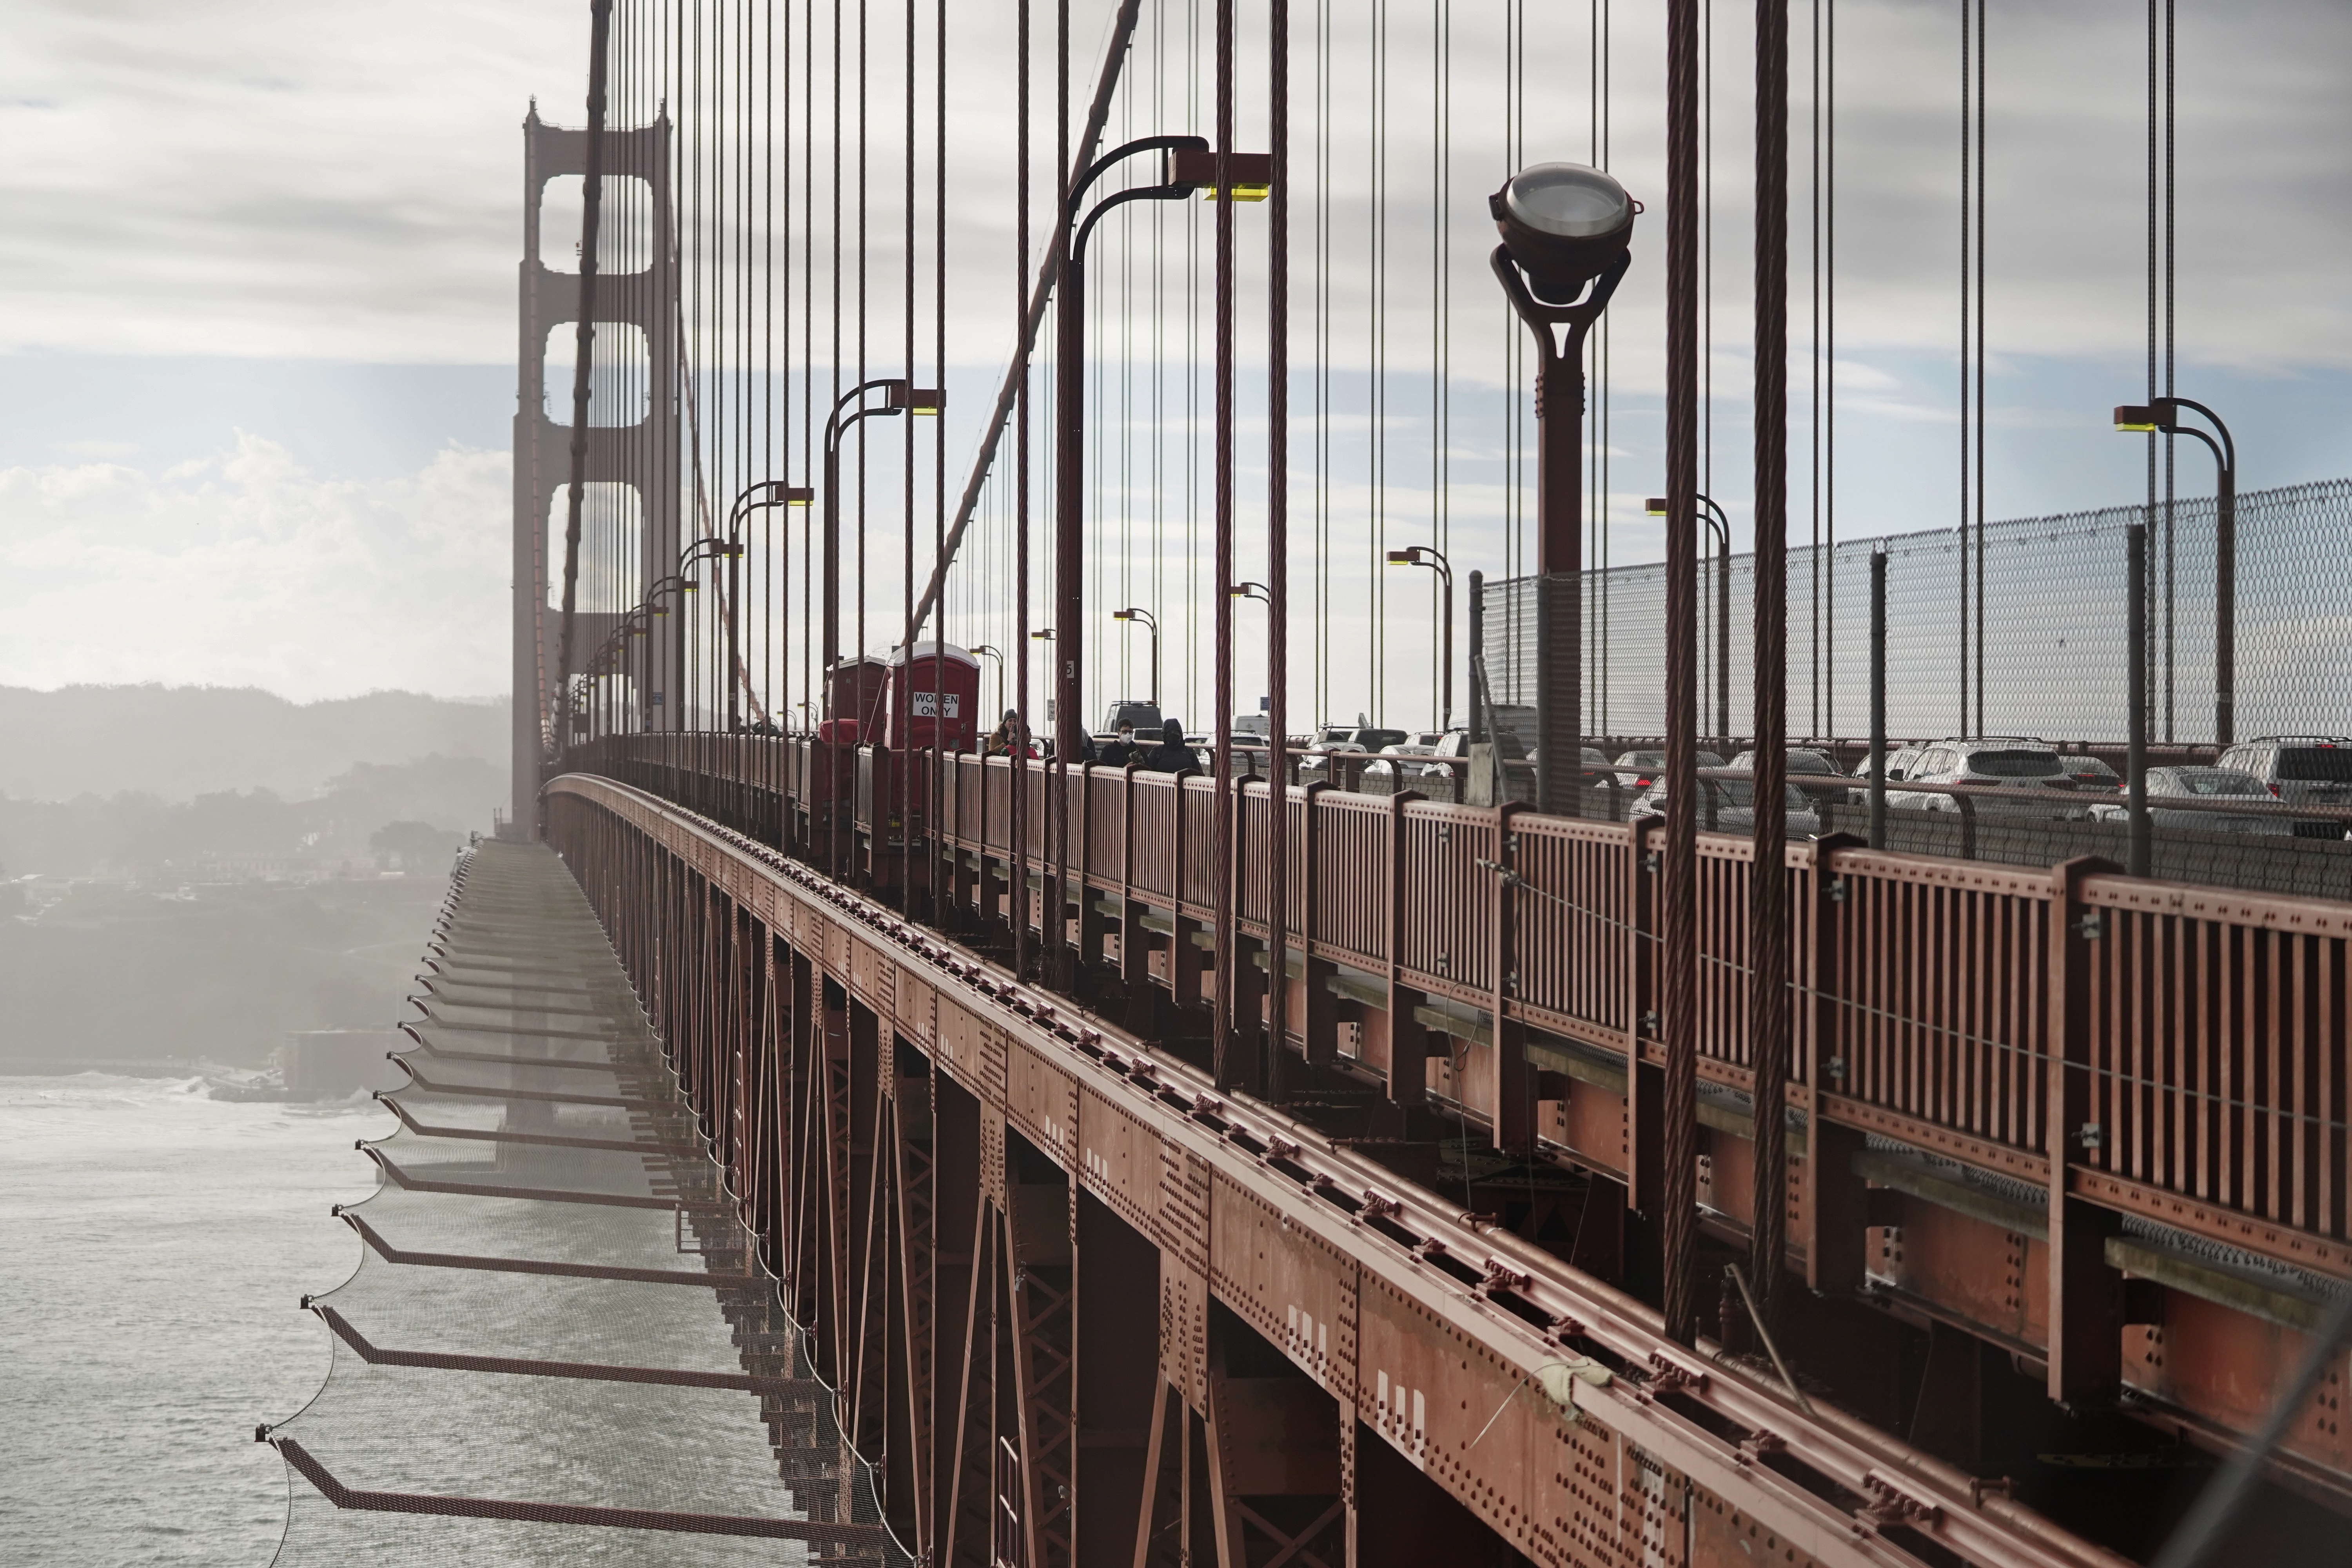 Ett nät ska hindra personer från att hoppa från den världsberömda Golden Gate-bron i San Francisco i USA. Bild från i december 2023, när nätet nästan var färdigmonterat.